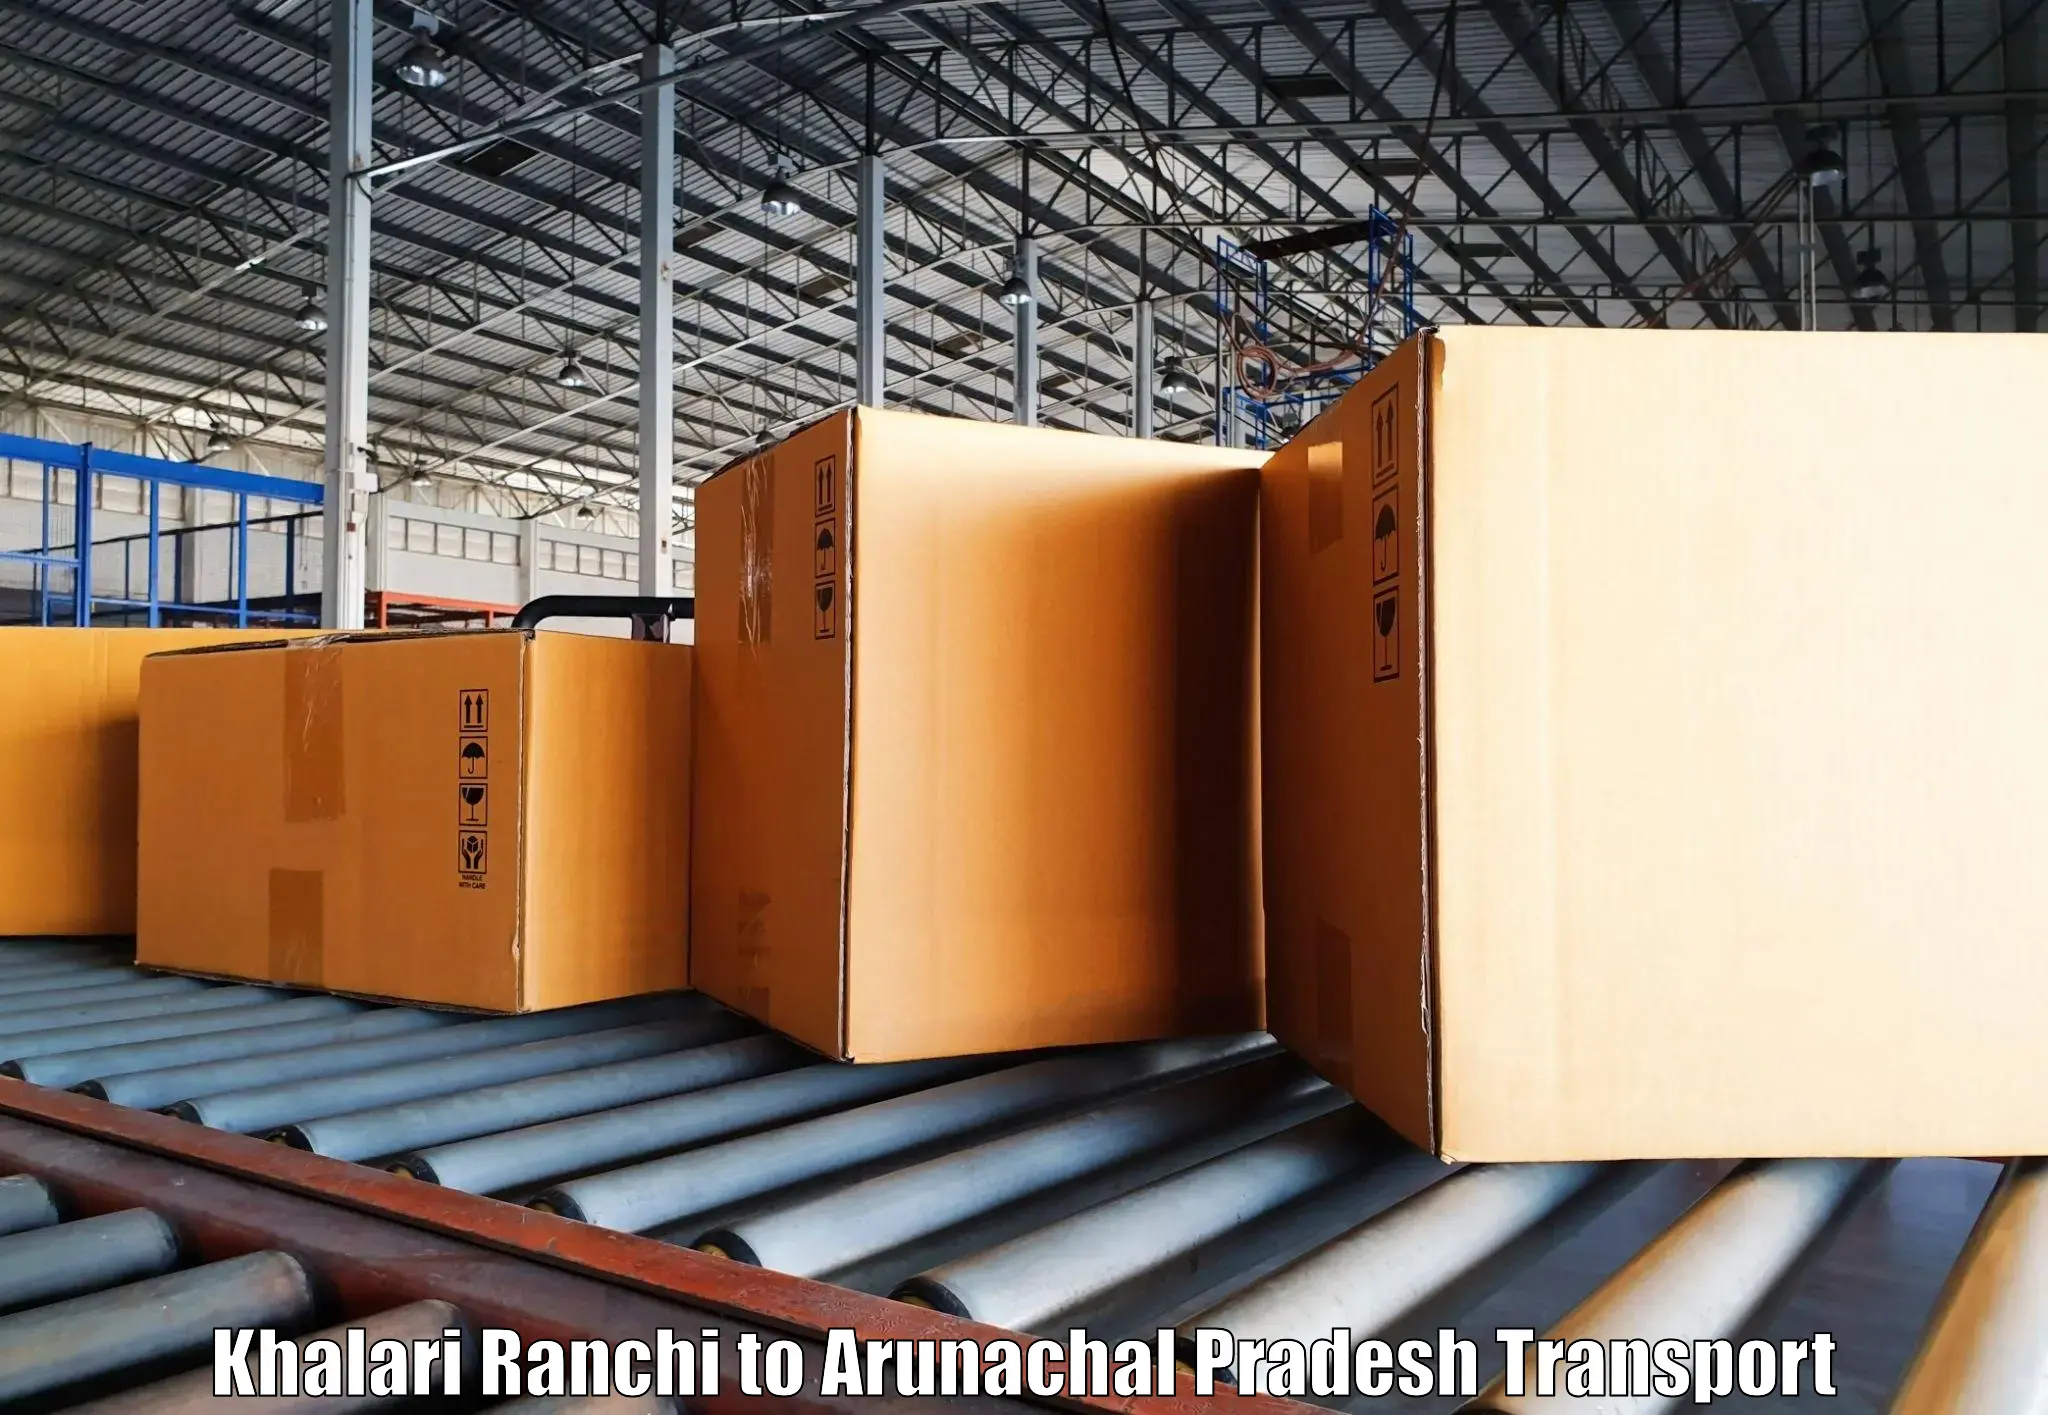 Pick up transport service Khalari Ranchi to Arunachal Pradesh